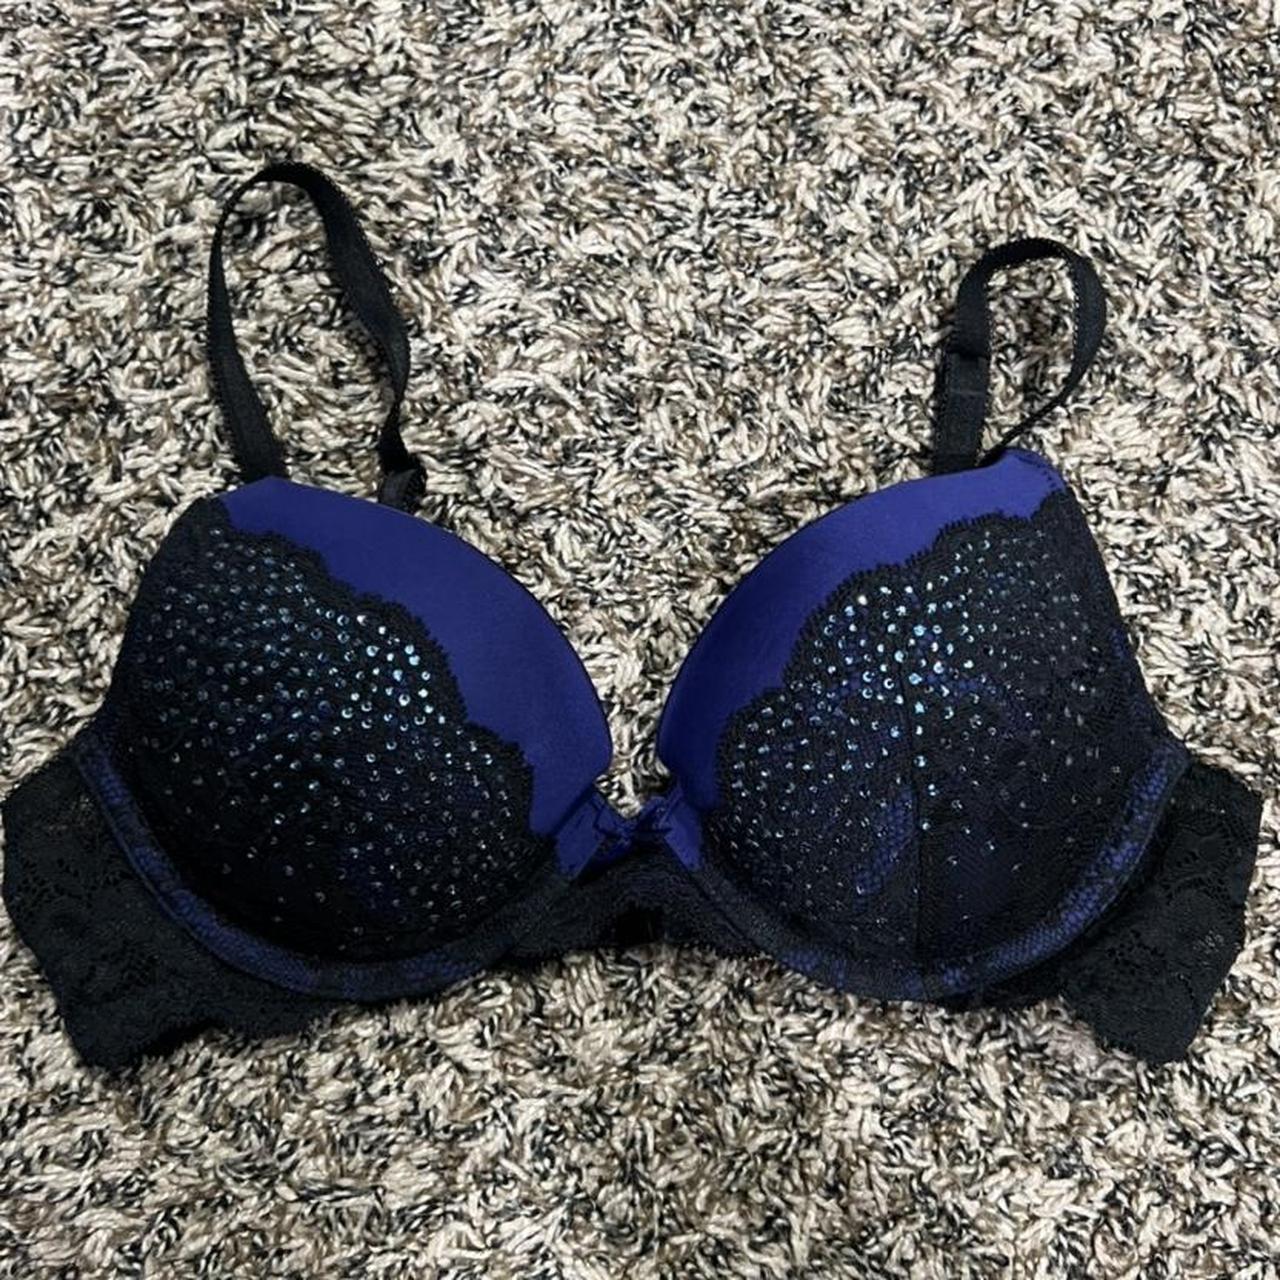 Victoria’s Secret blue and black rhinestone lace